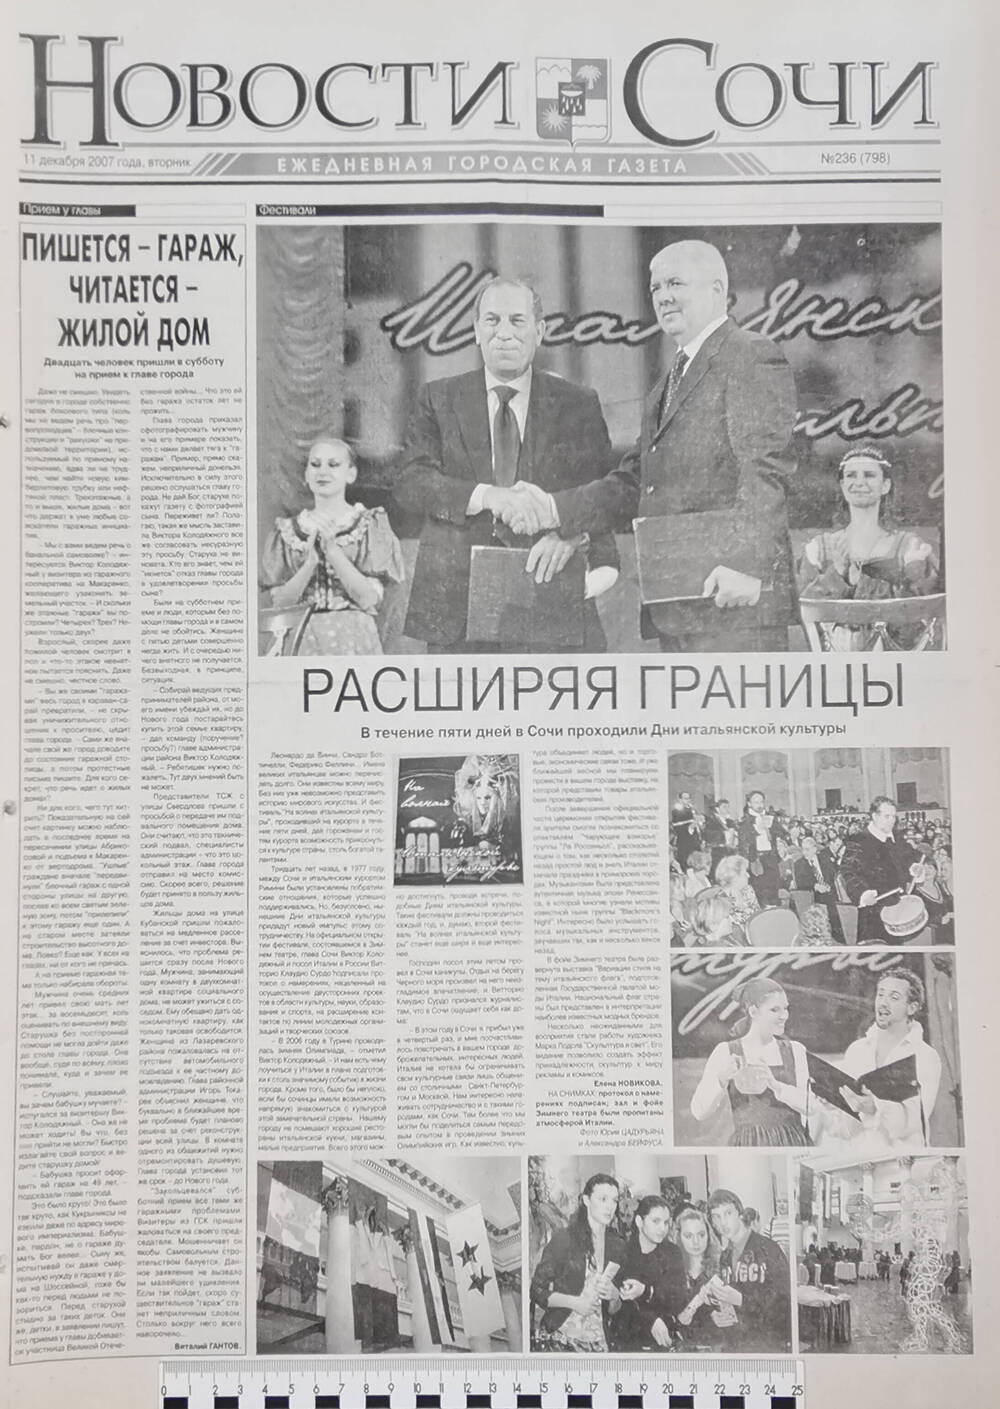 Газета ежедневная городская «Новости Сочи» № 236 (798) от 11 декабря 2007 г.